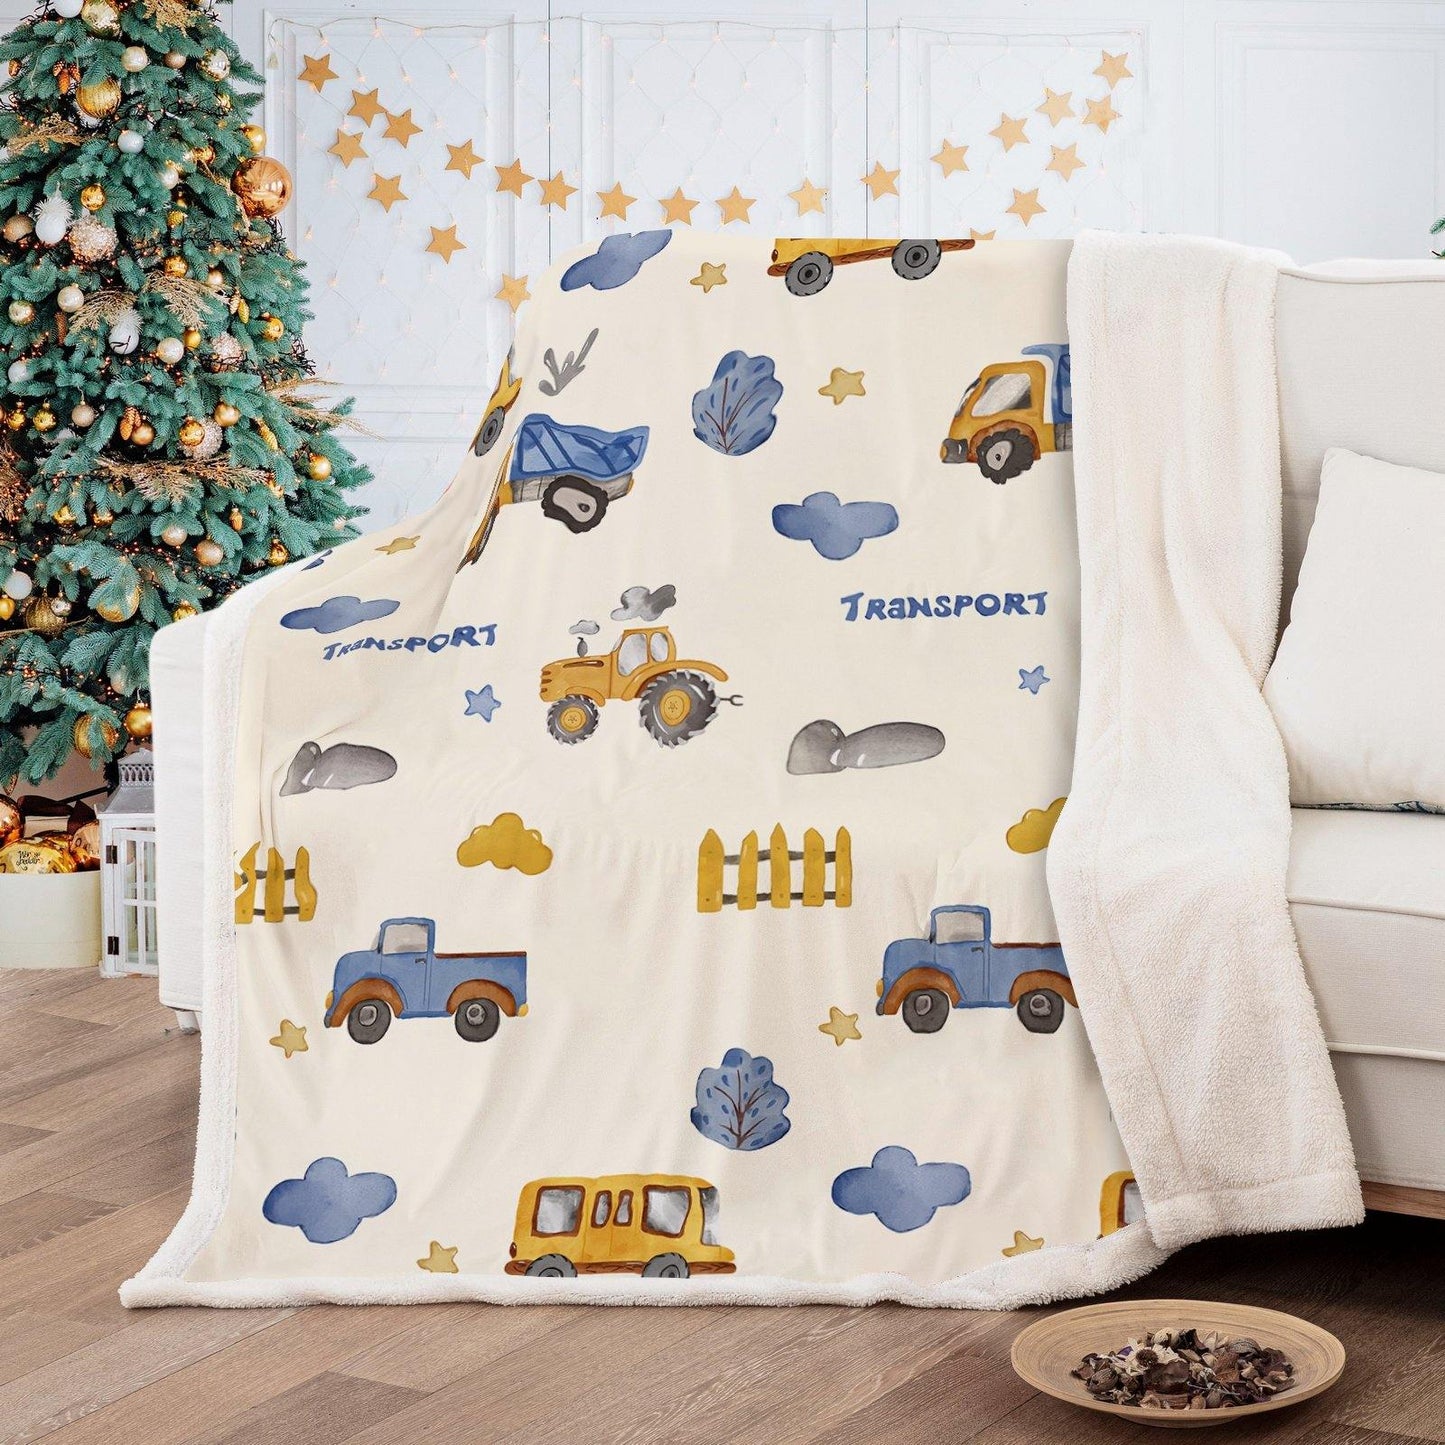 WONGS BEDDING Cartoon car blanket bedroom living room decoration blanket - Wongs bedding